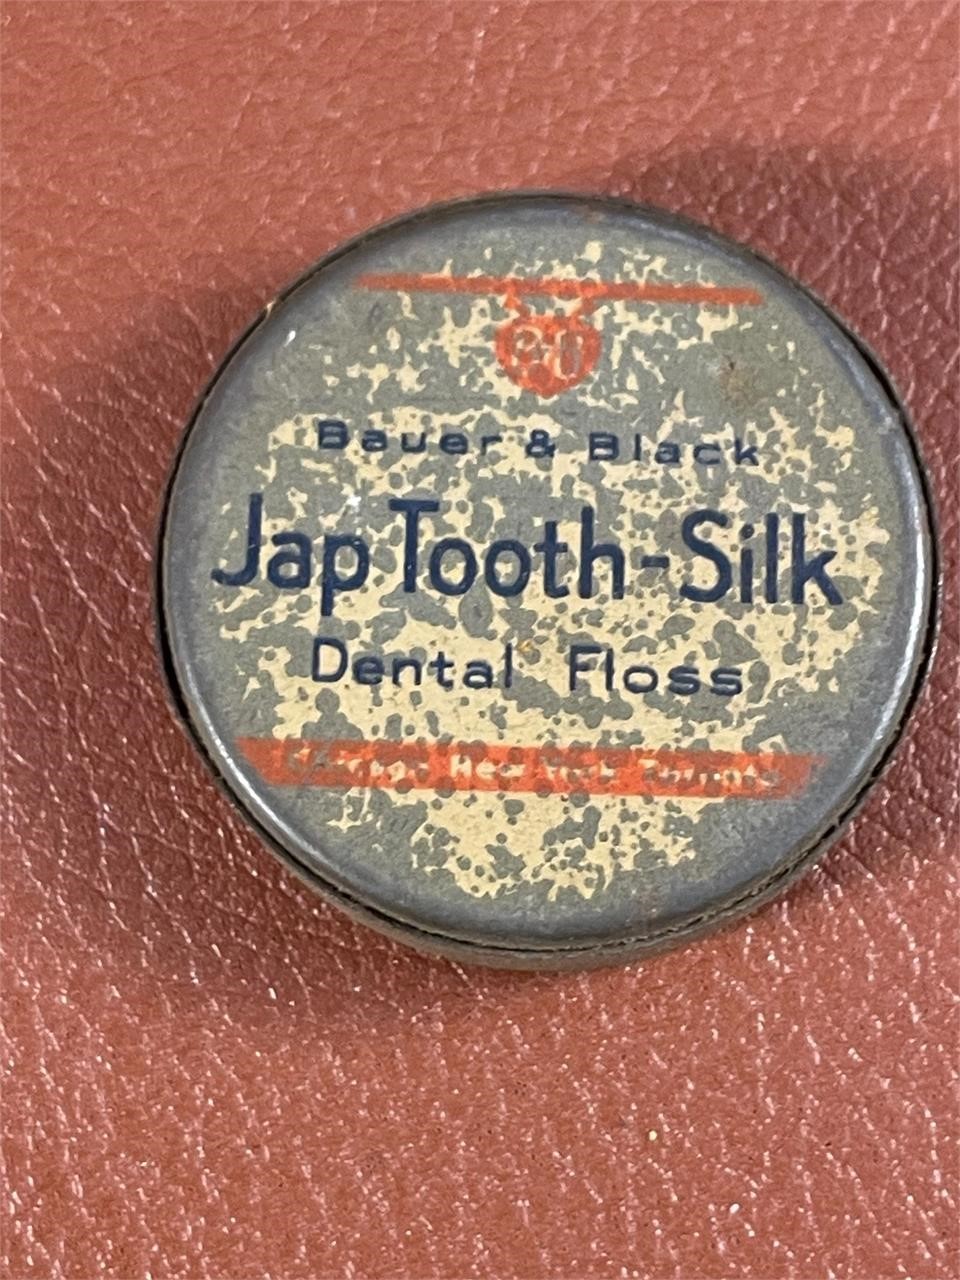 Bauer & Black Jap Tooth-Silk Dental Floss Tin